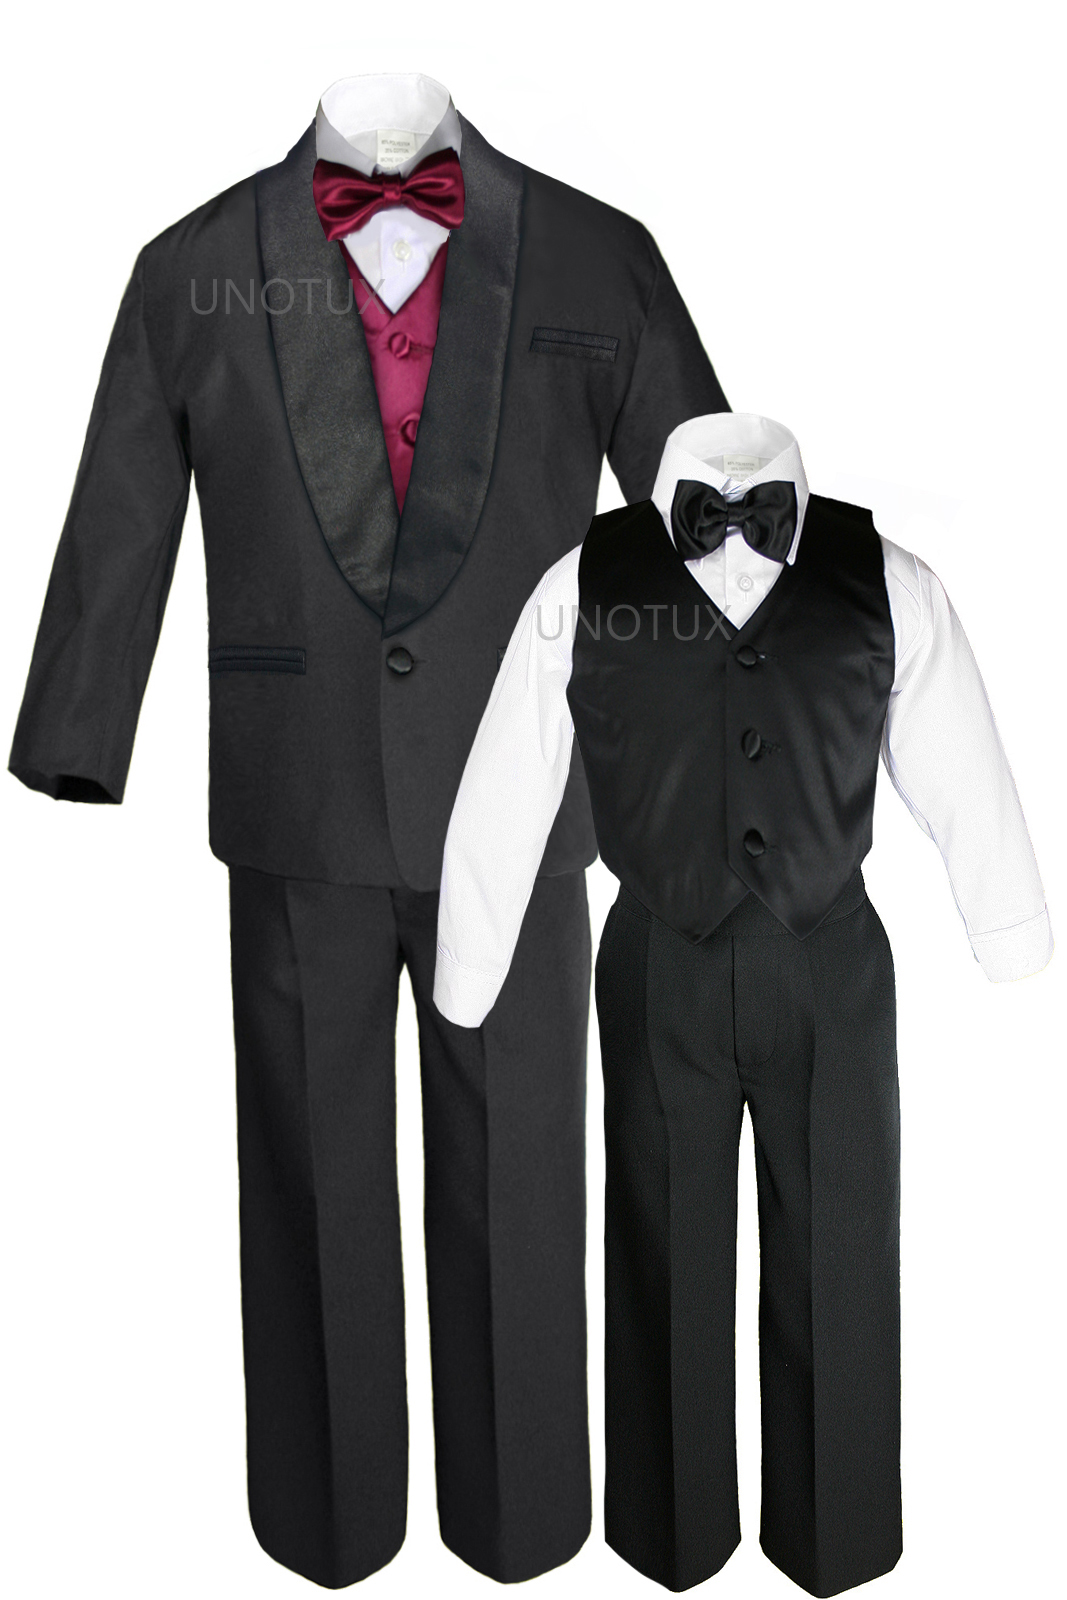 Unotux S M L XL 2T 3T 4T Baby Infant Toddler Black Formal Wedding Party Boy Shawl Lapel Suit Tuxedo Outfit 7pc Burgundy Vest Set